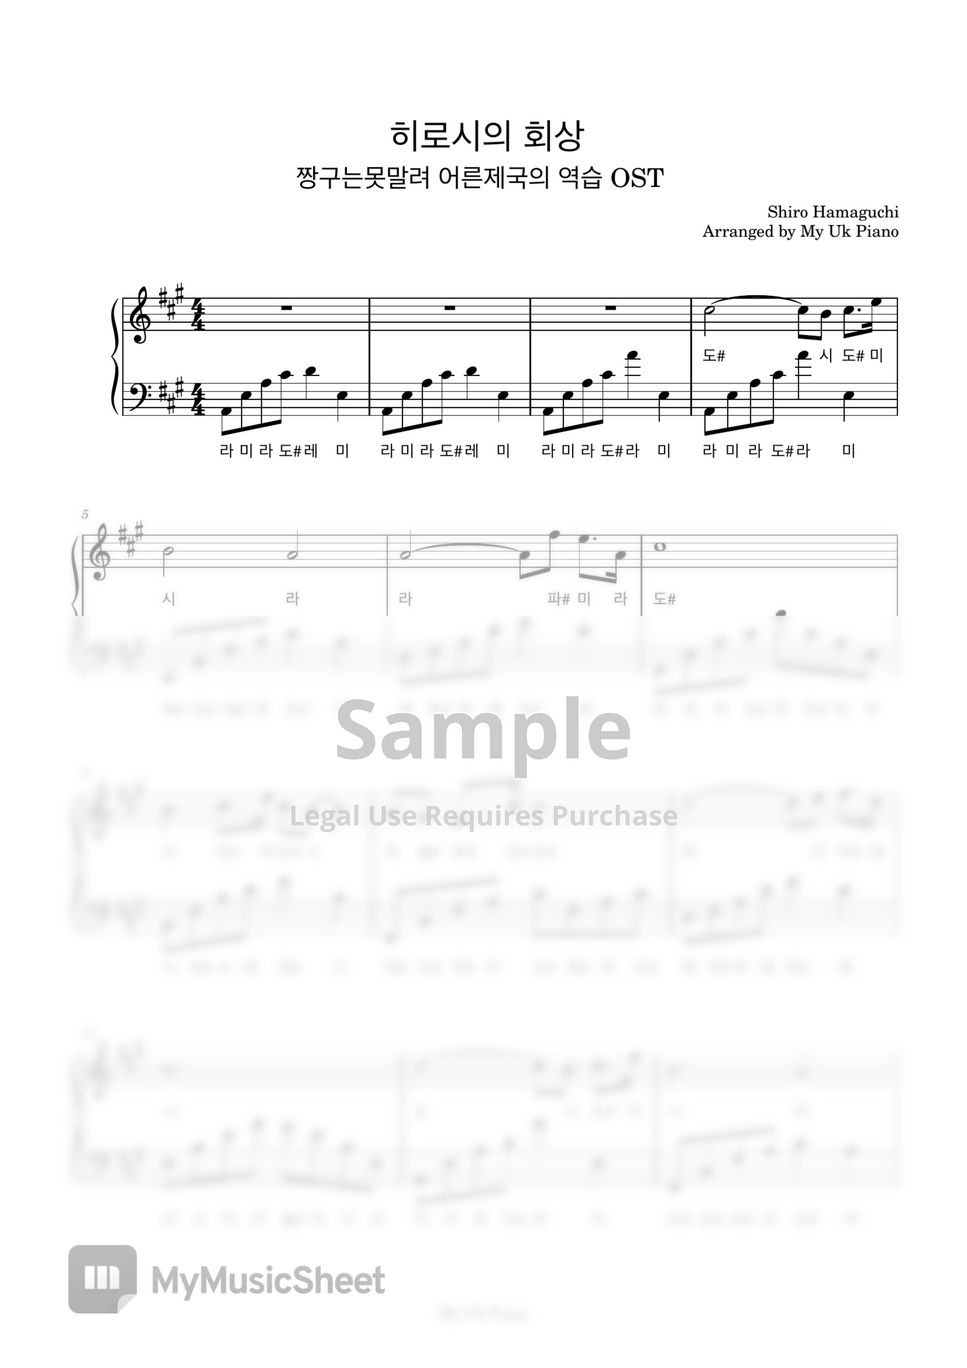 하마구치 시로 - 히로시의 회상(짱구, 어른제국의 역습 OST) (계이름악보) by My Uk Piano